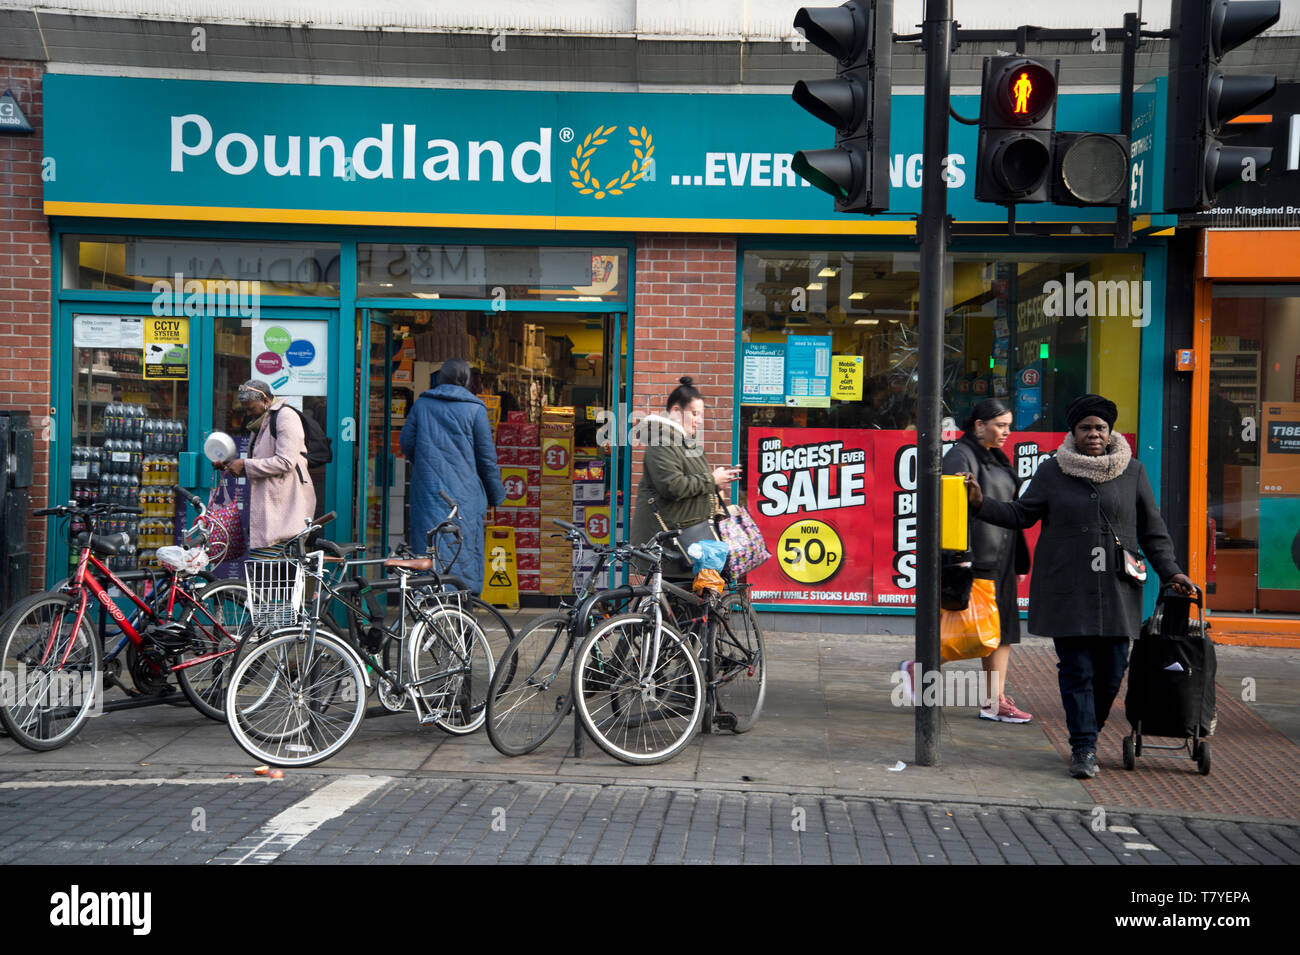 Kingsland Road, Hackney. Poundland. Stock Photo